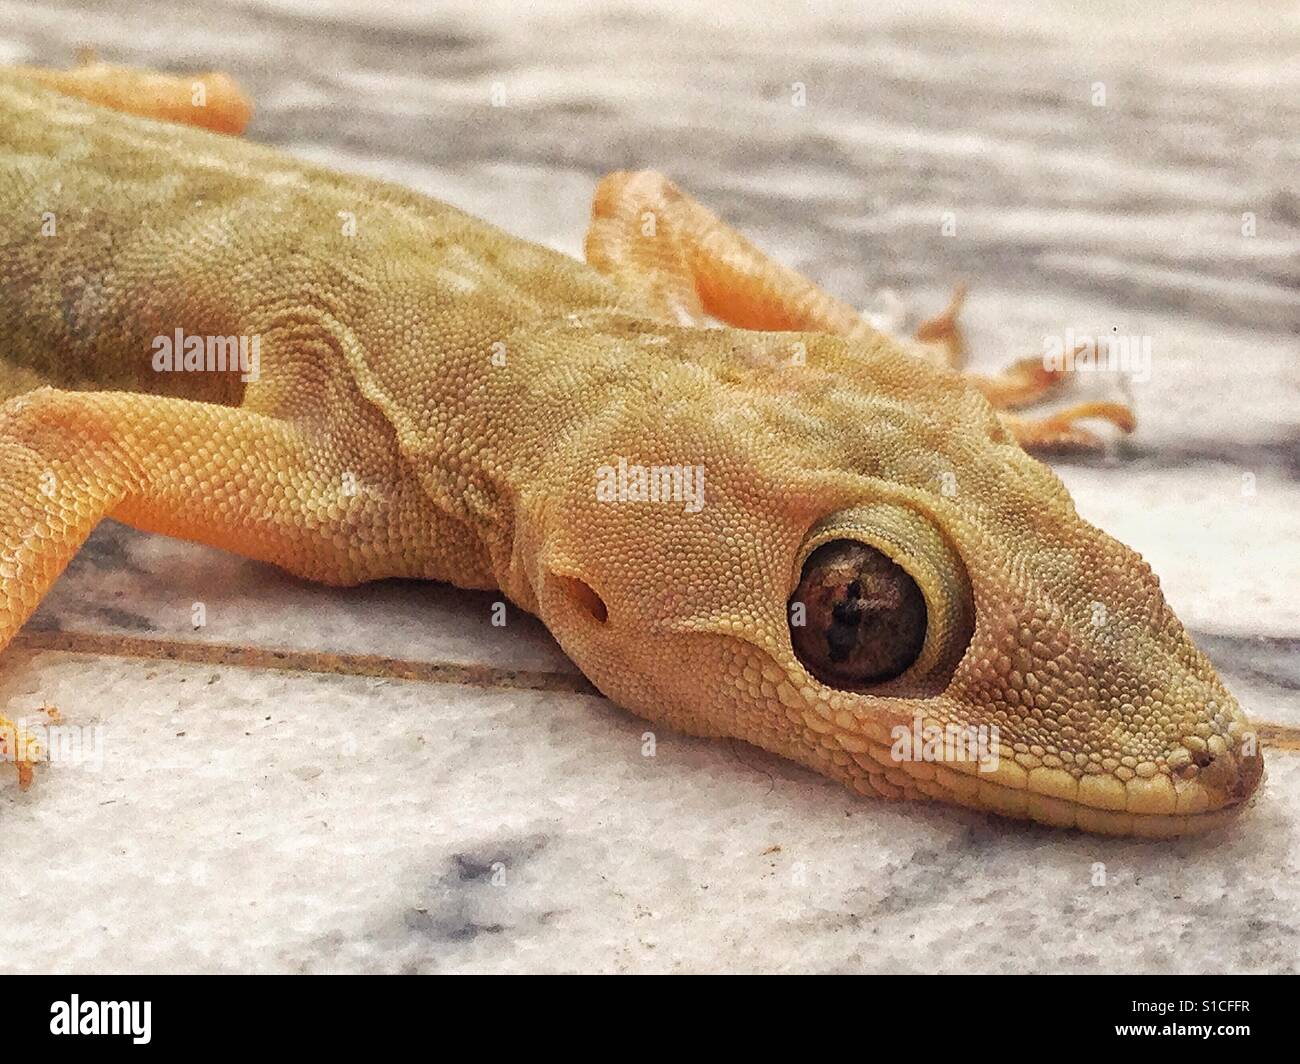 Lizard mira fijamente con sus ojos reptilianos Foto de stock